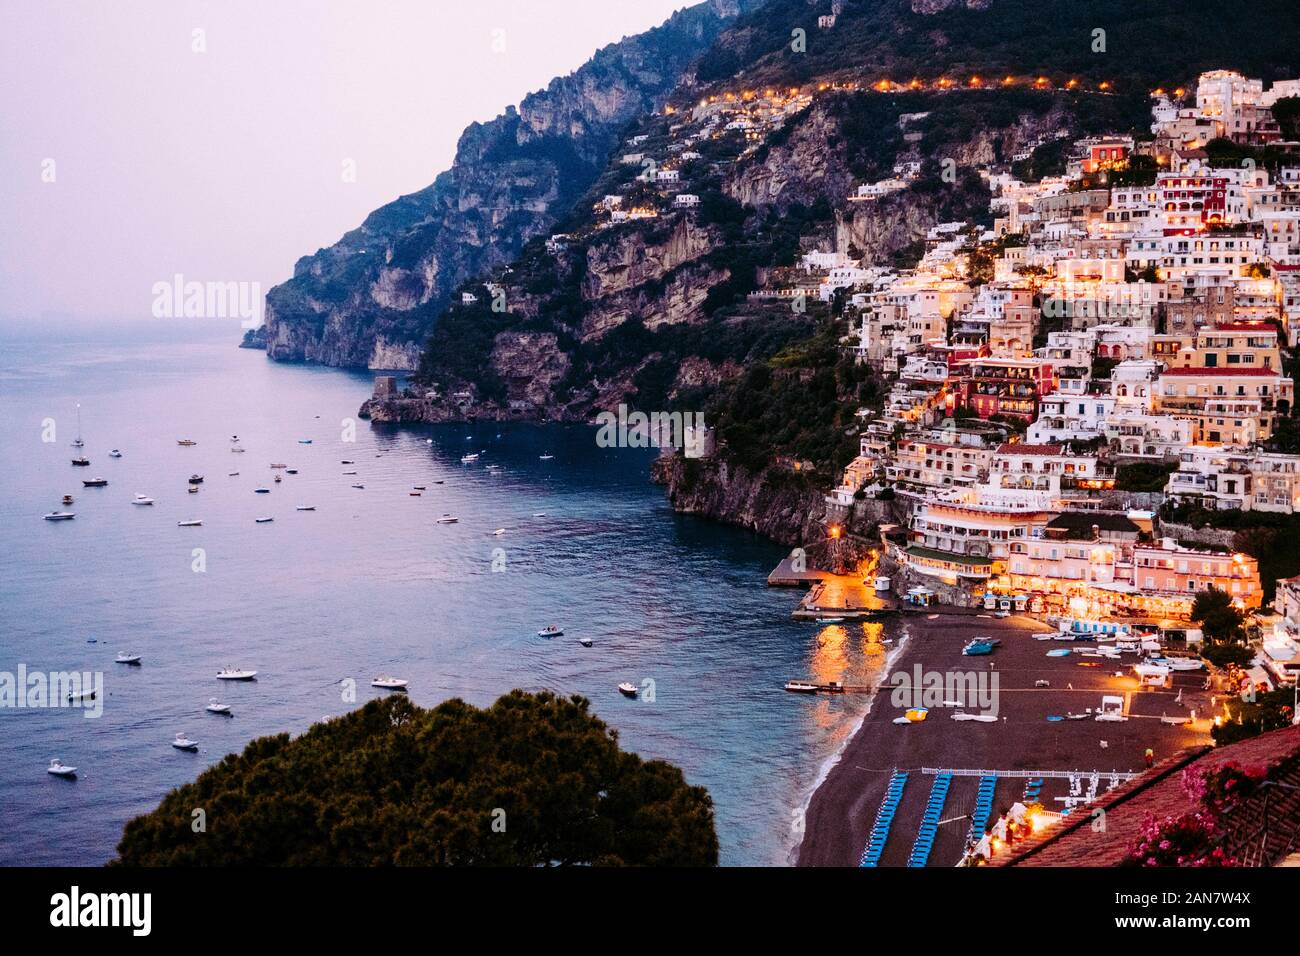 The city of Positano, Amalfi Coast, Italy Stock Photo